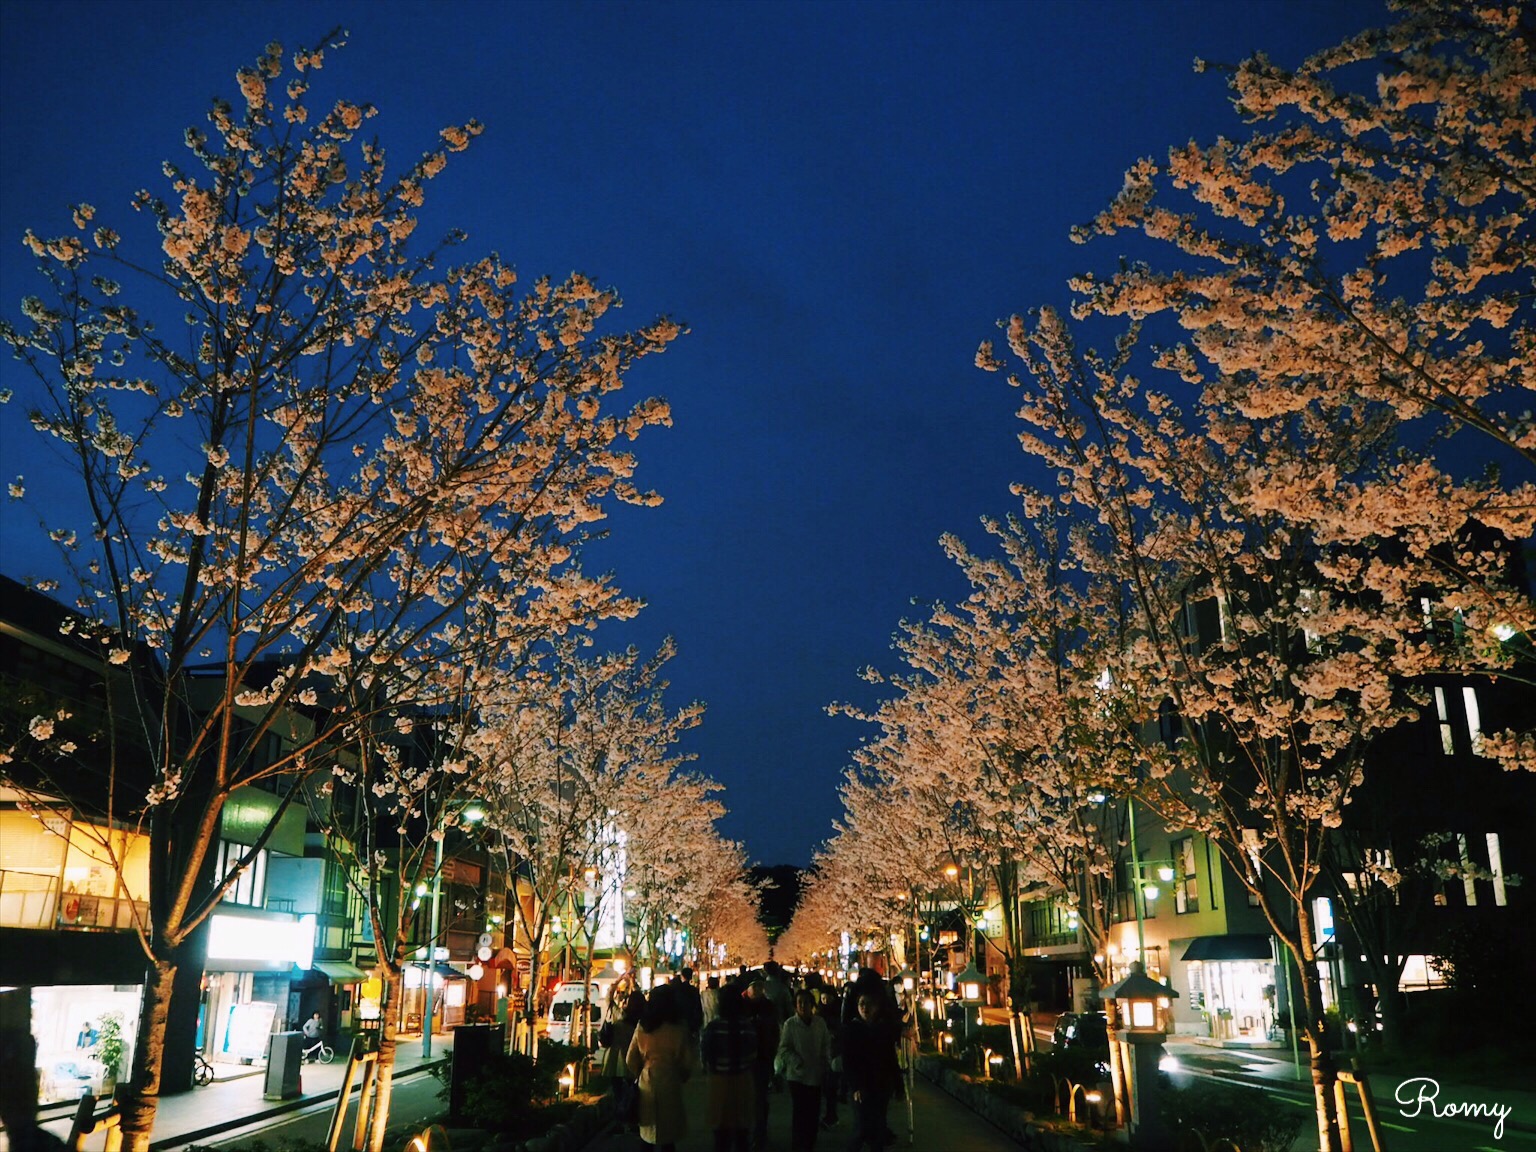 鎌倉若宮大路・段葛の夜桜